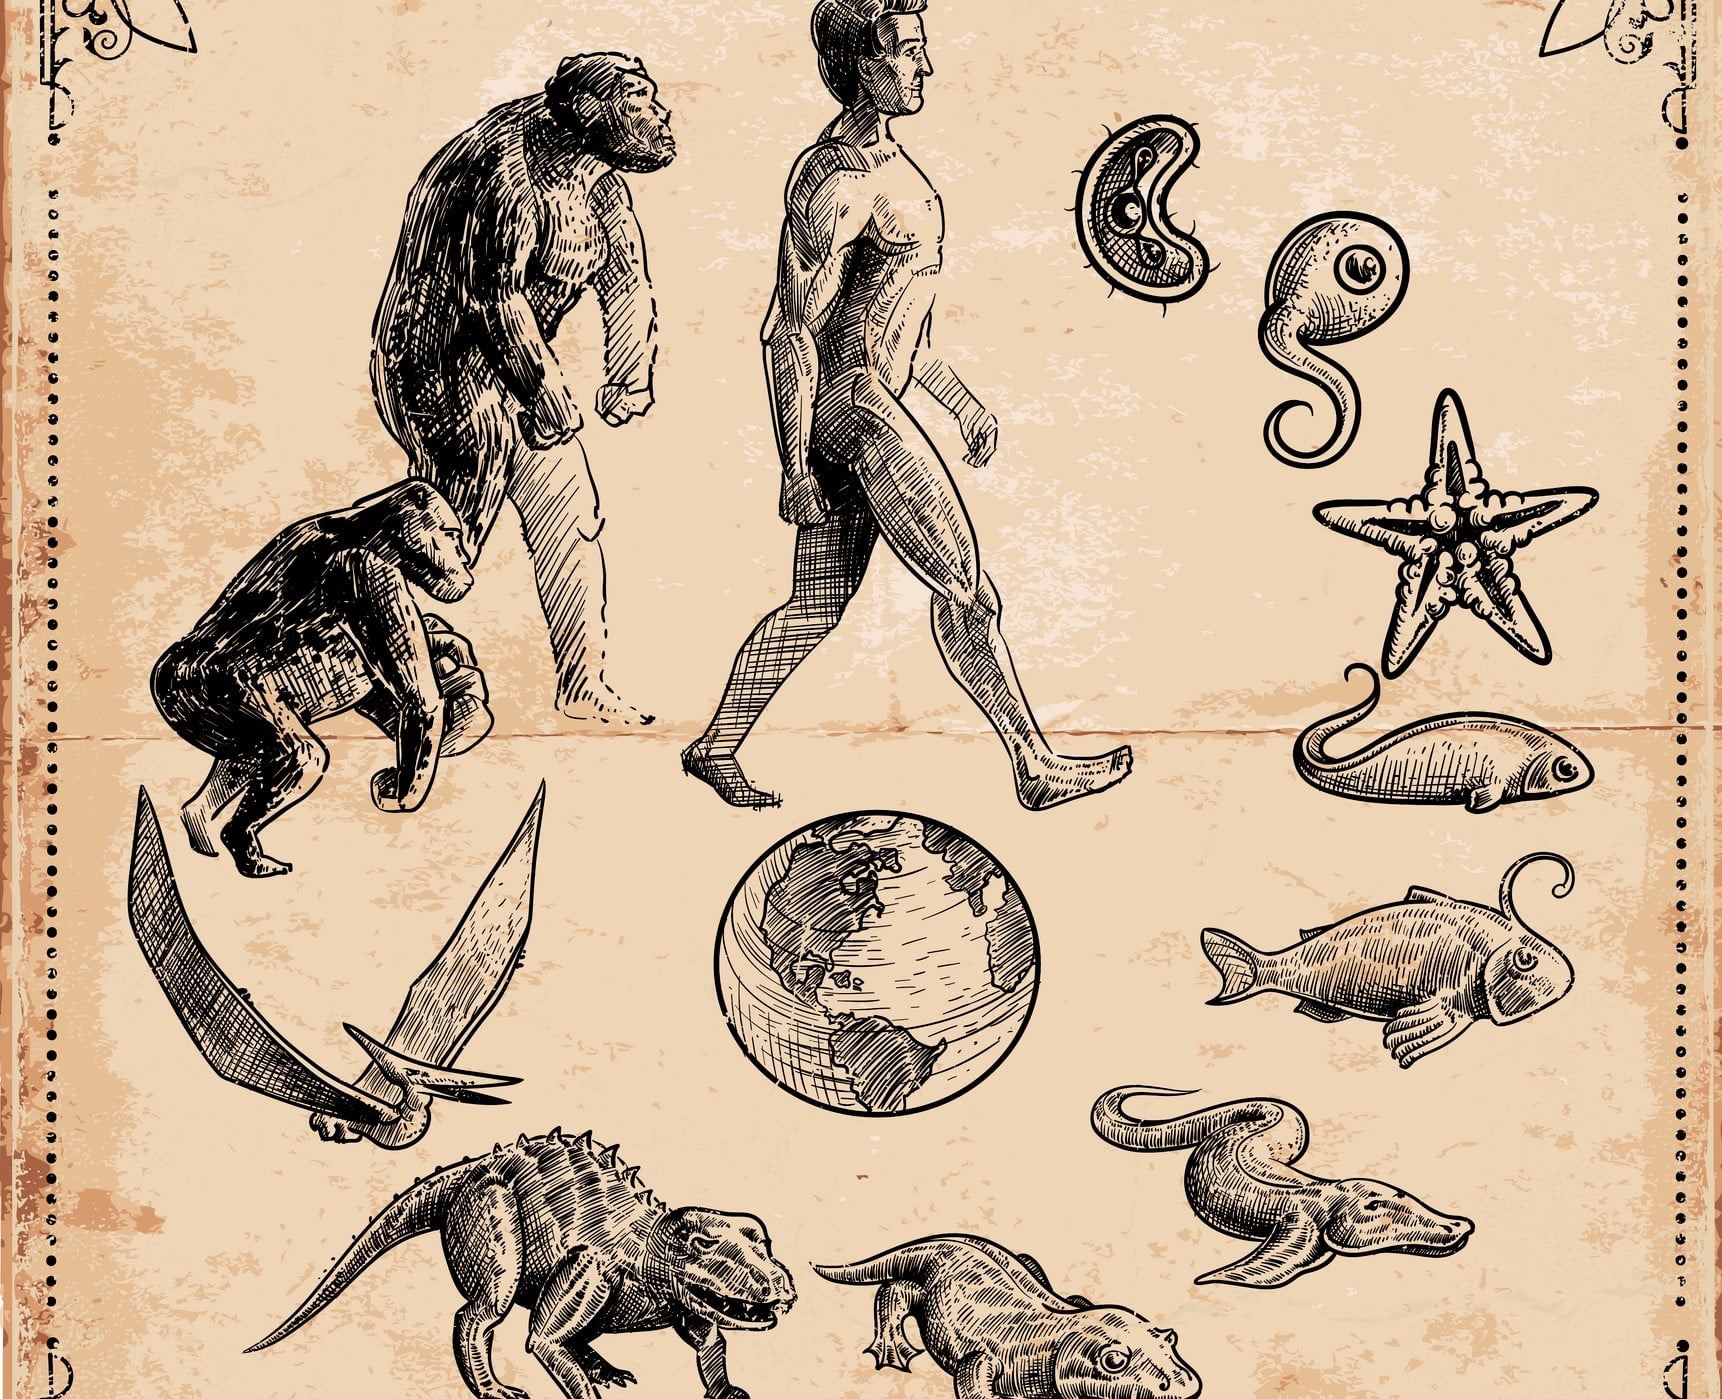 Aprenda o que é Darwinismo e a seleção natural